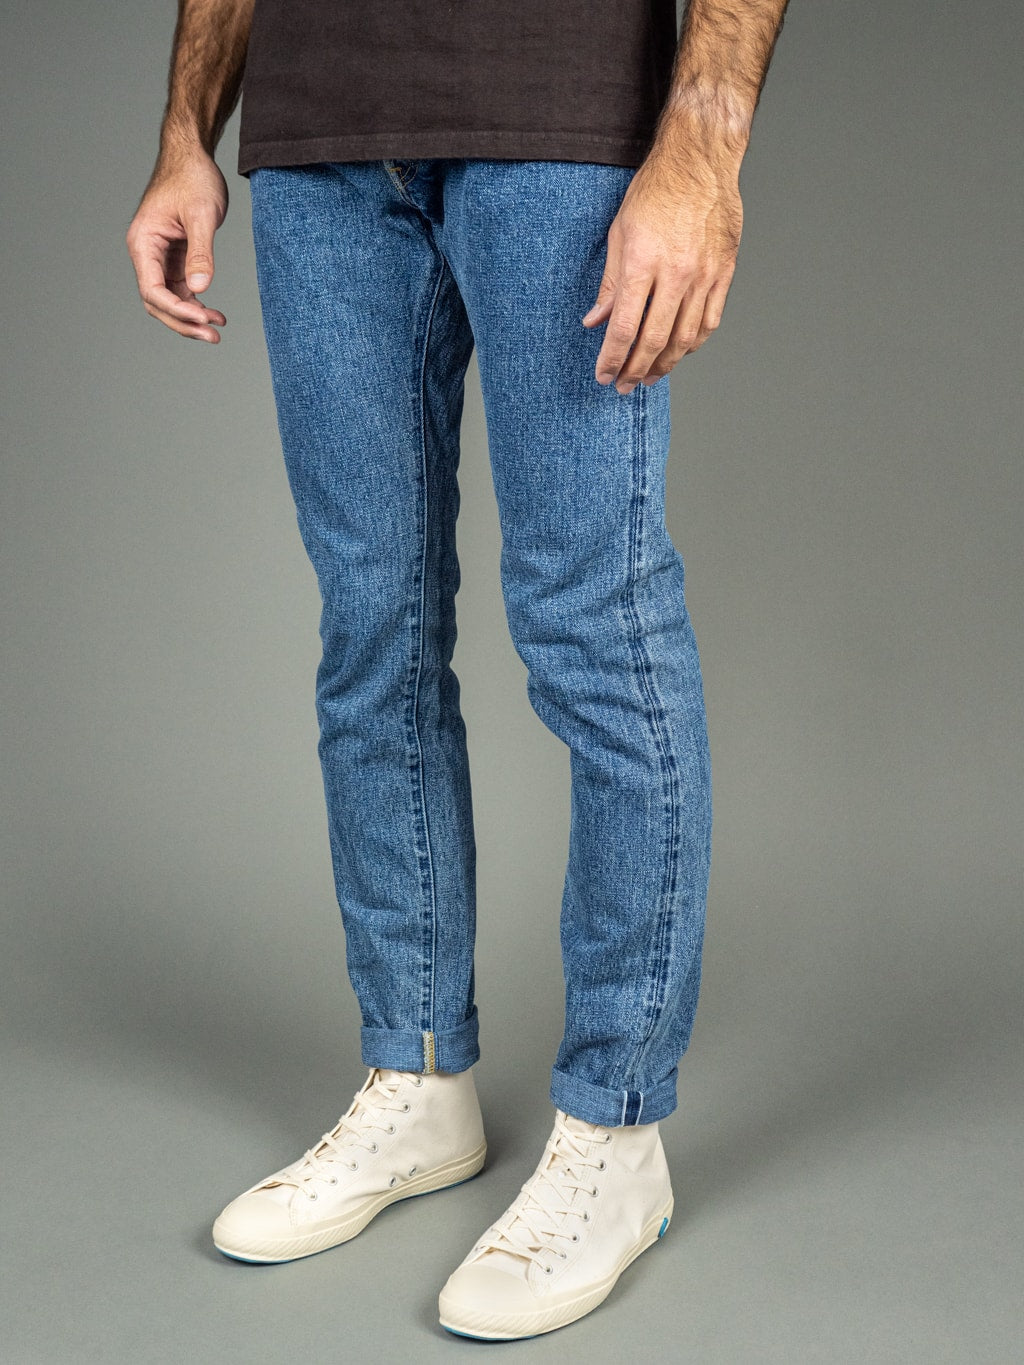 Tanuki Yurai Stonewash High Tapered Jeans Side